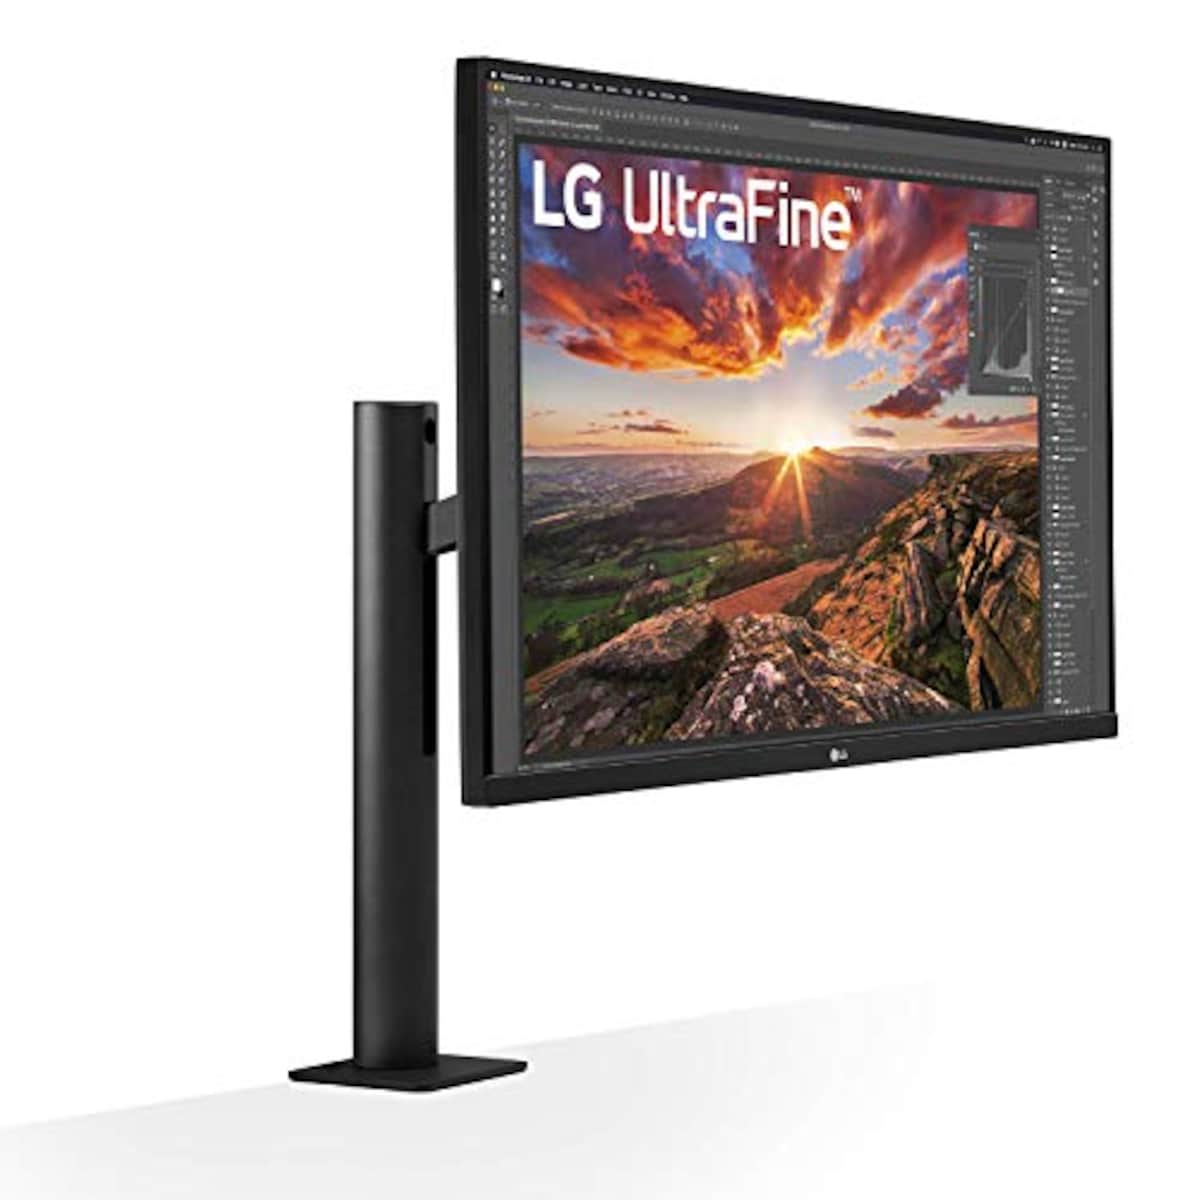  LG エルゴノミクス スタンド モニター ディスプレイ 32UN880-B 31.5インチ/4K/HDR/IPS非光沢/USB Type-C,HDMI×2、DP/FreeSync/スピーカー/チルト,スイベル,高さ調節,ピボット対応/フリッカーセーフ,ブルーライト低減/3年安心・無輝点保証画像3 